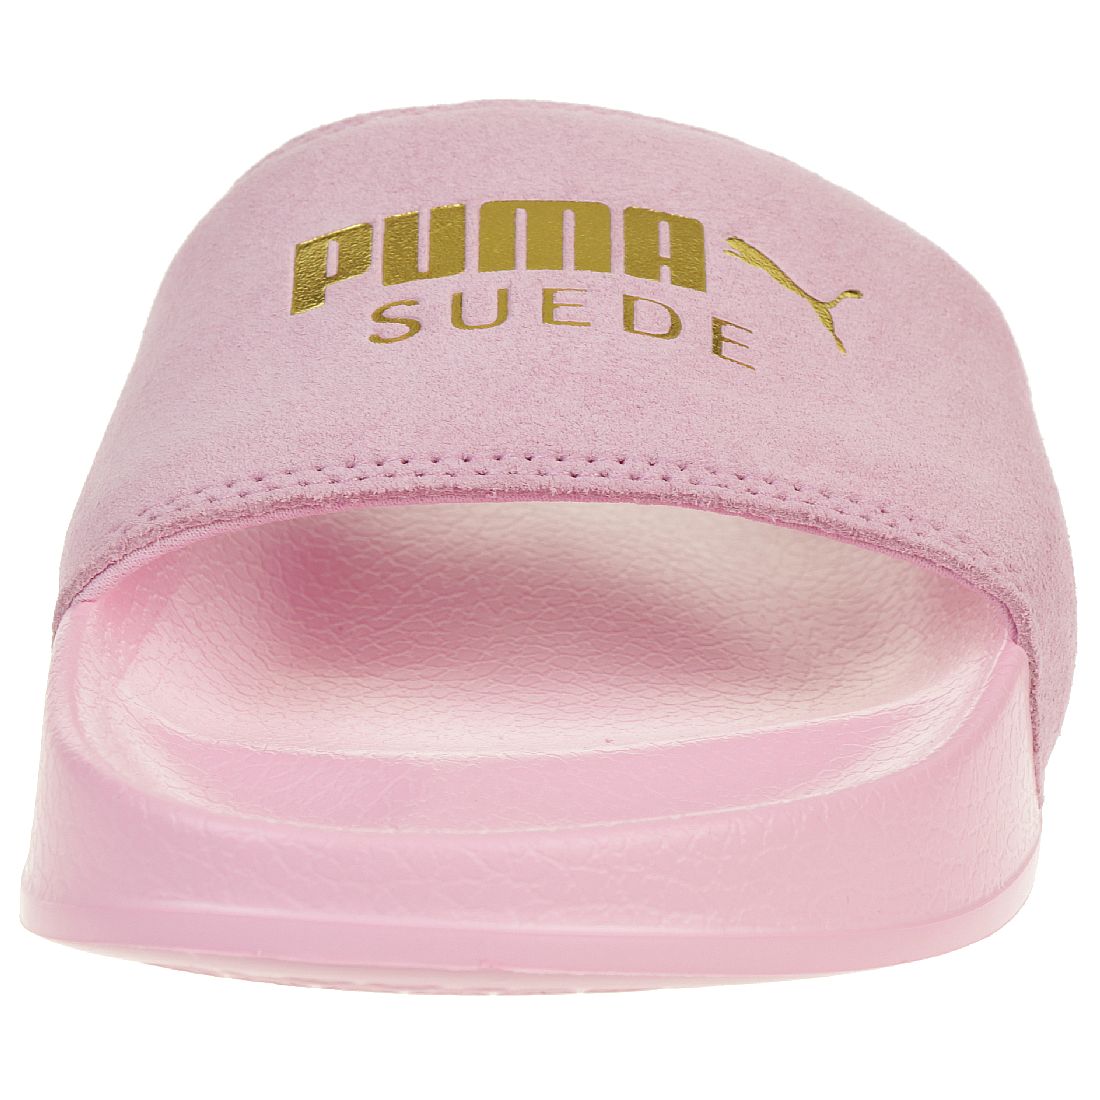 Puma Leadcat Suede Unisex-Erwachsene Sandalen Badelatschen pink